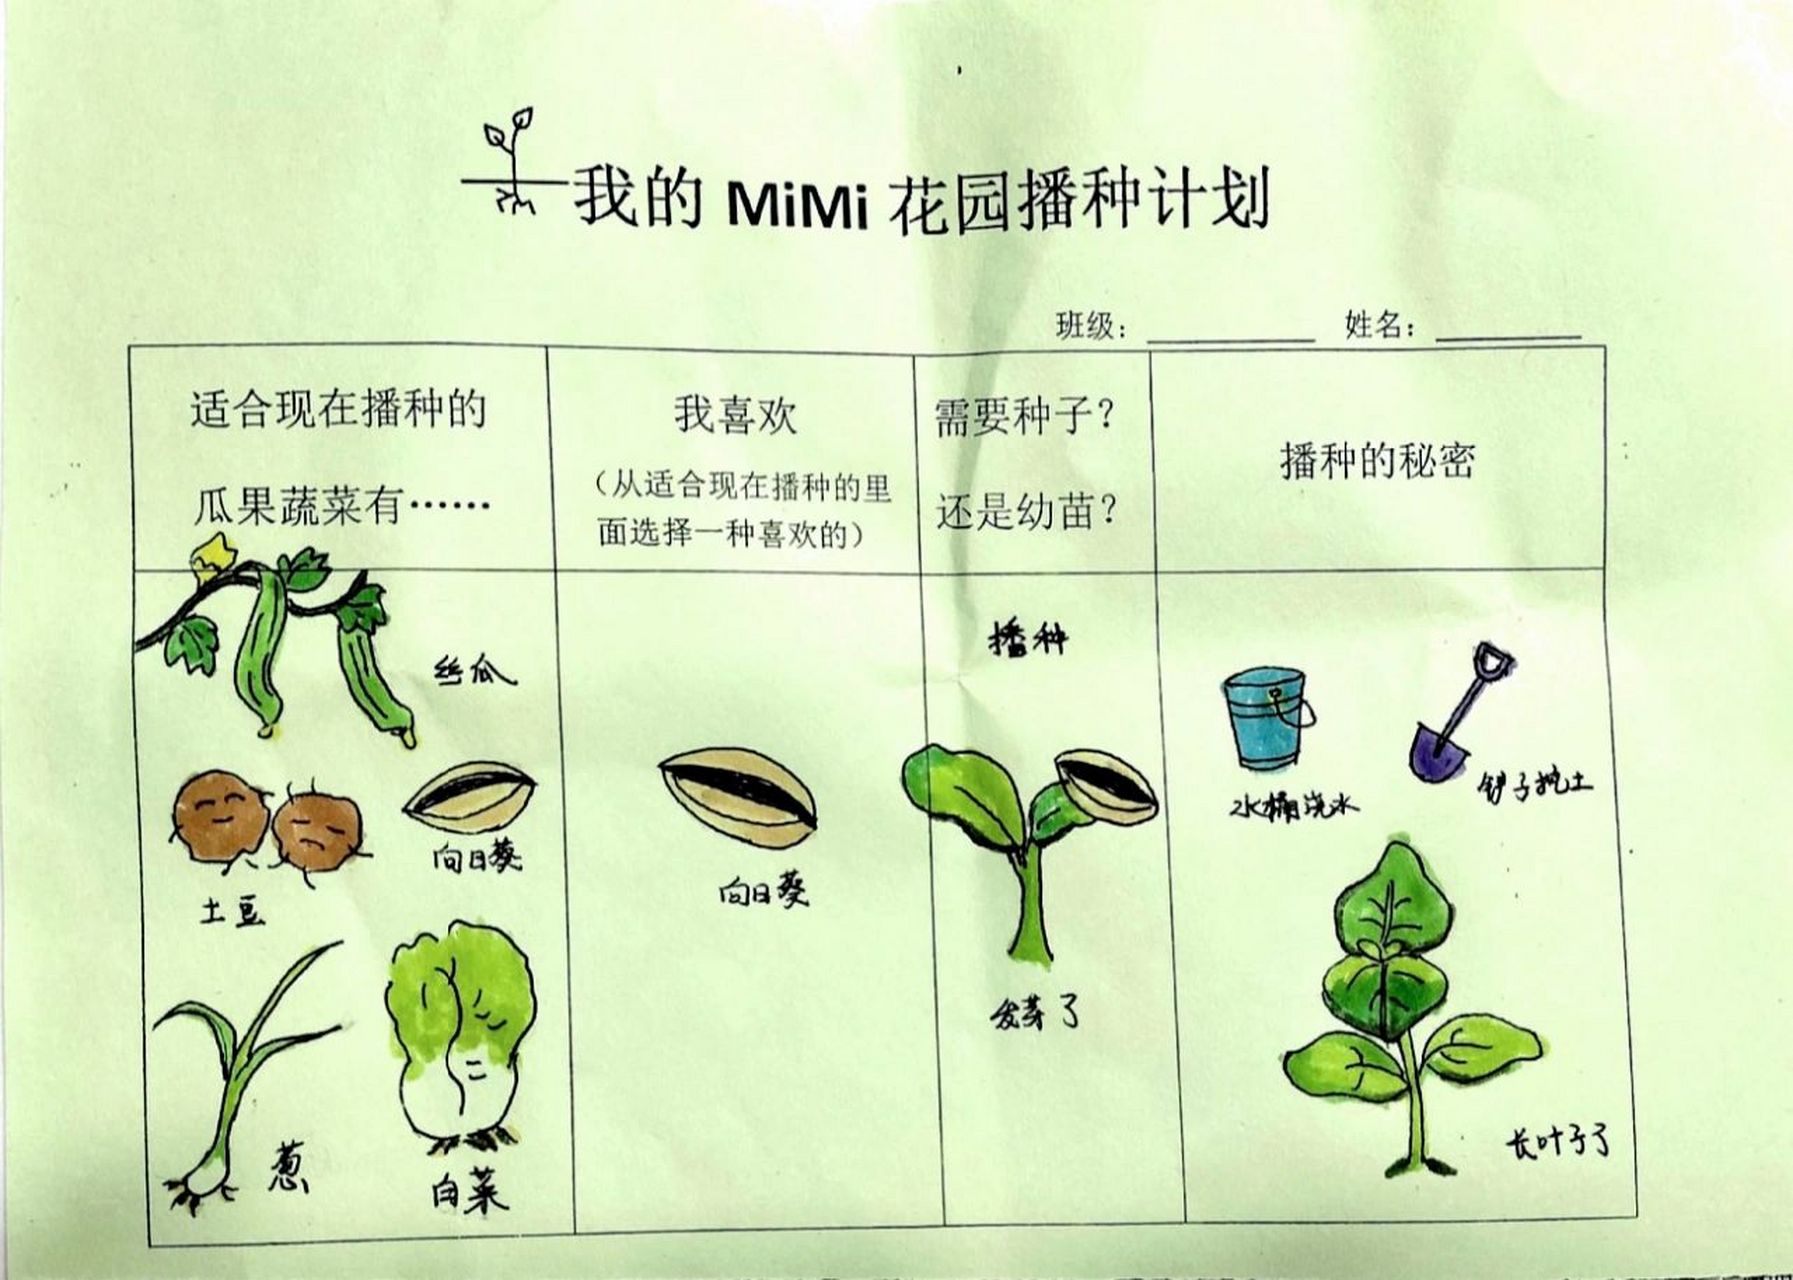 幼儿园播种调查表 适合春天播种的蔬菜瓜果 春天是播种的季节,今日份